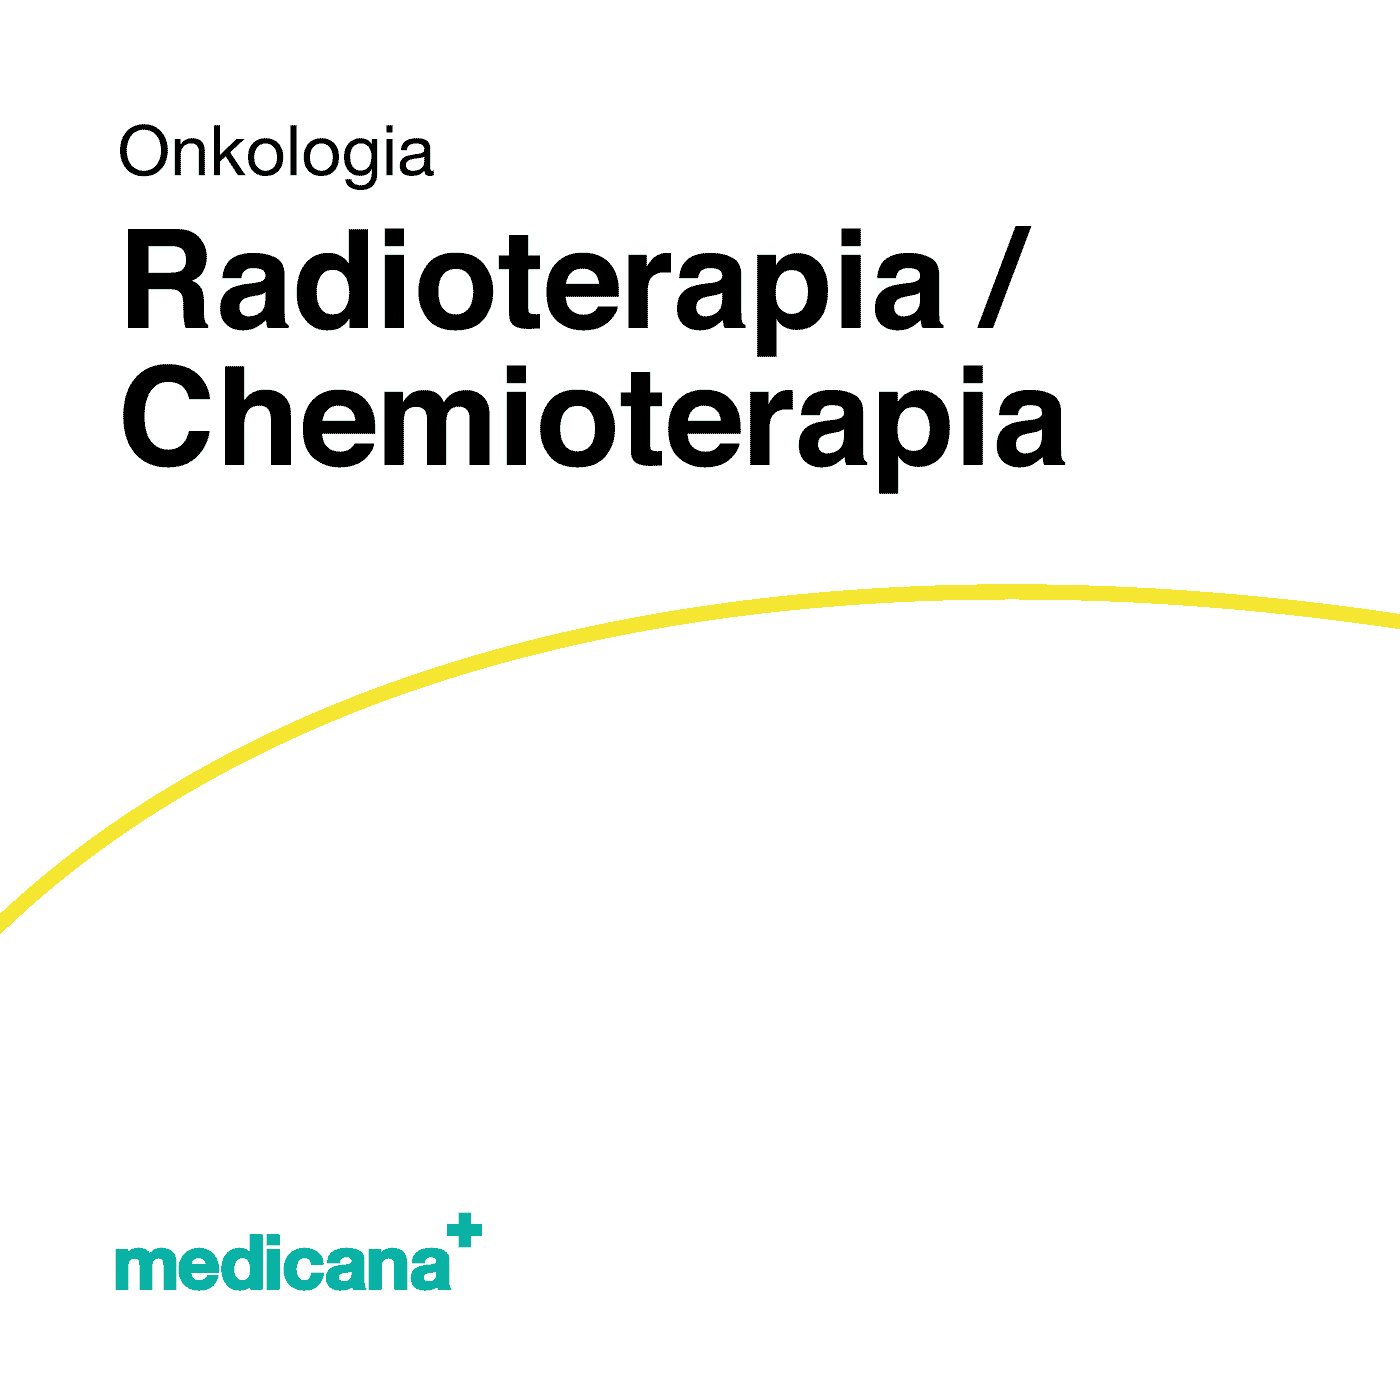 Grafika, białe tło z żółtą kreską, czarnym napisem Onkologia - Radioterapia, Chemioterapia i logo Medicana Centrum Terapii Medyczna Marihuana w lewym dolnym rogu.